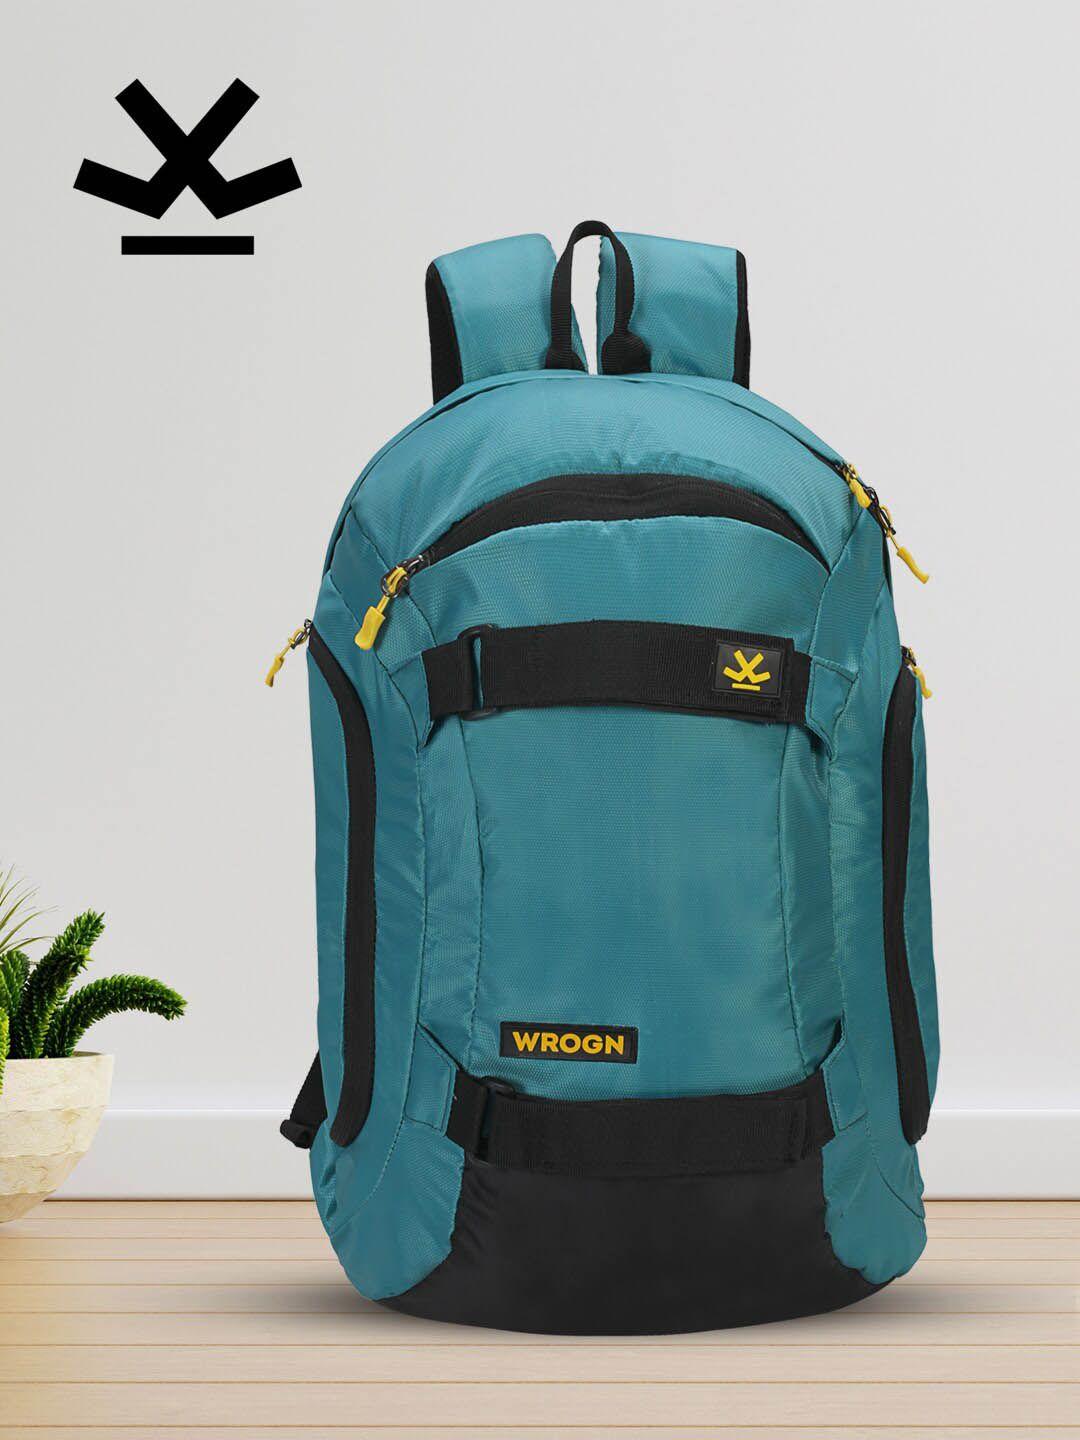 wrogn brand logo laptop backpack